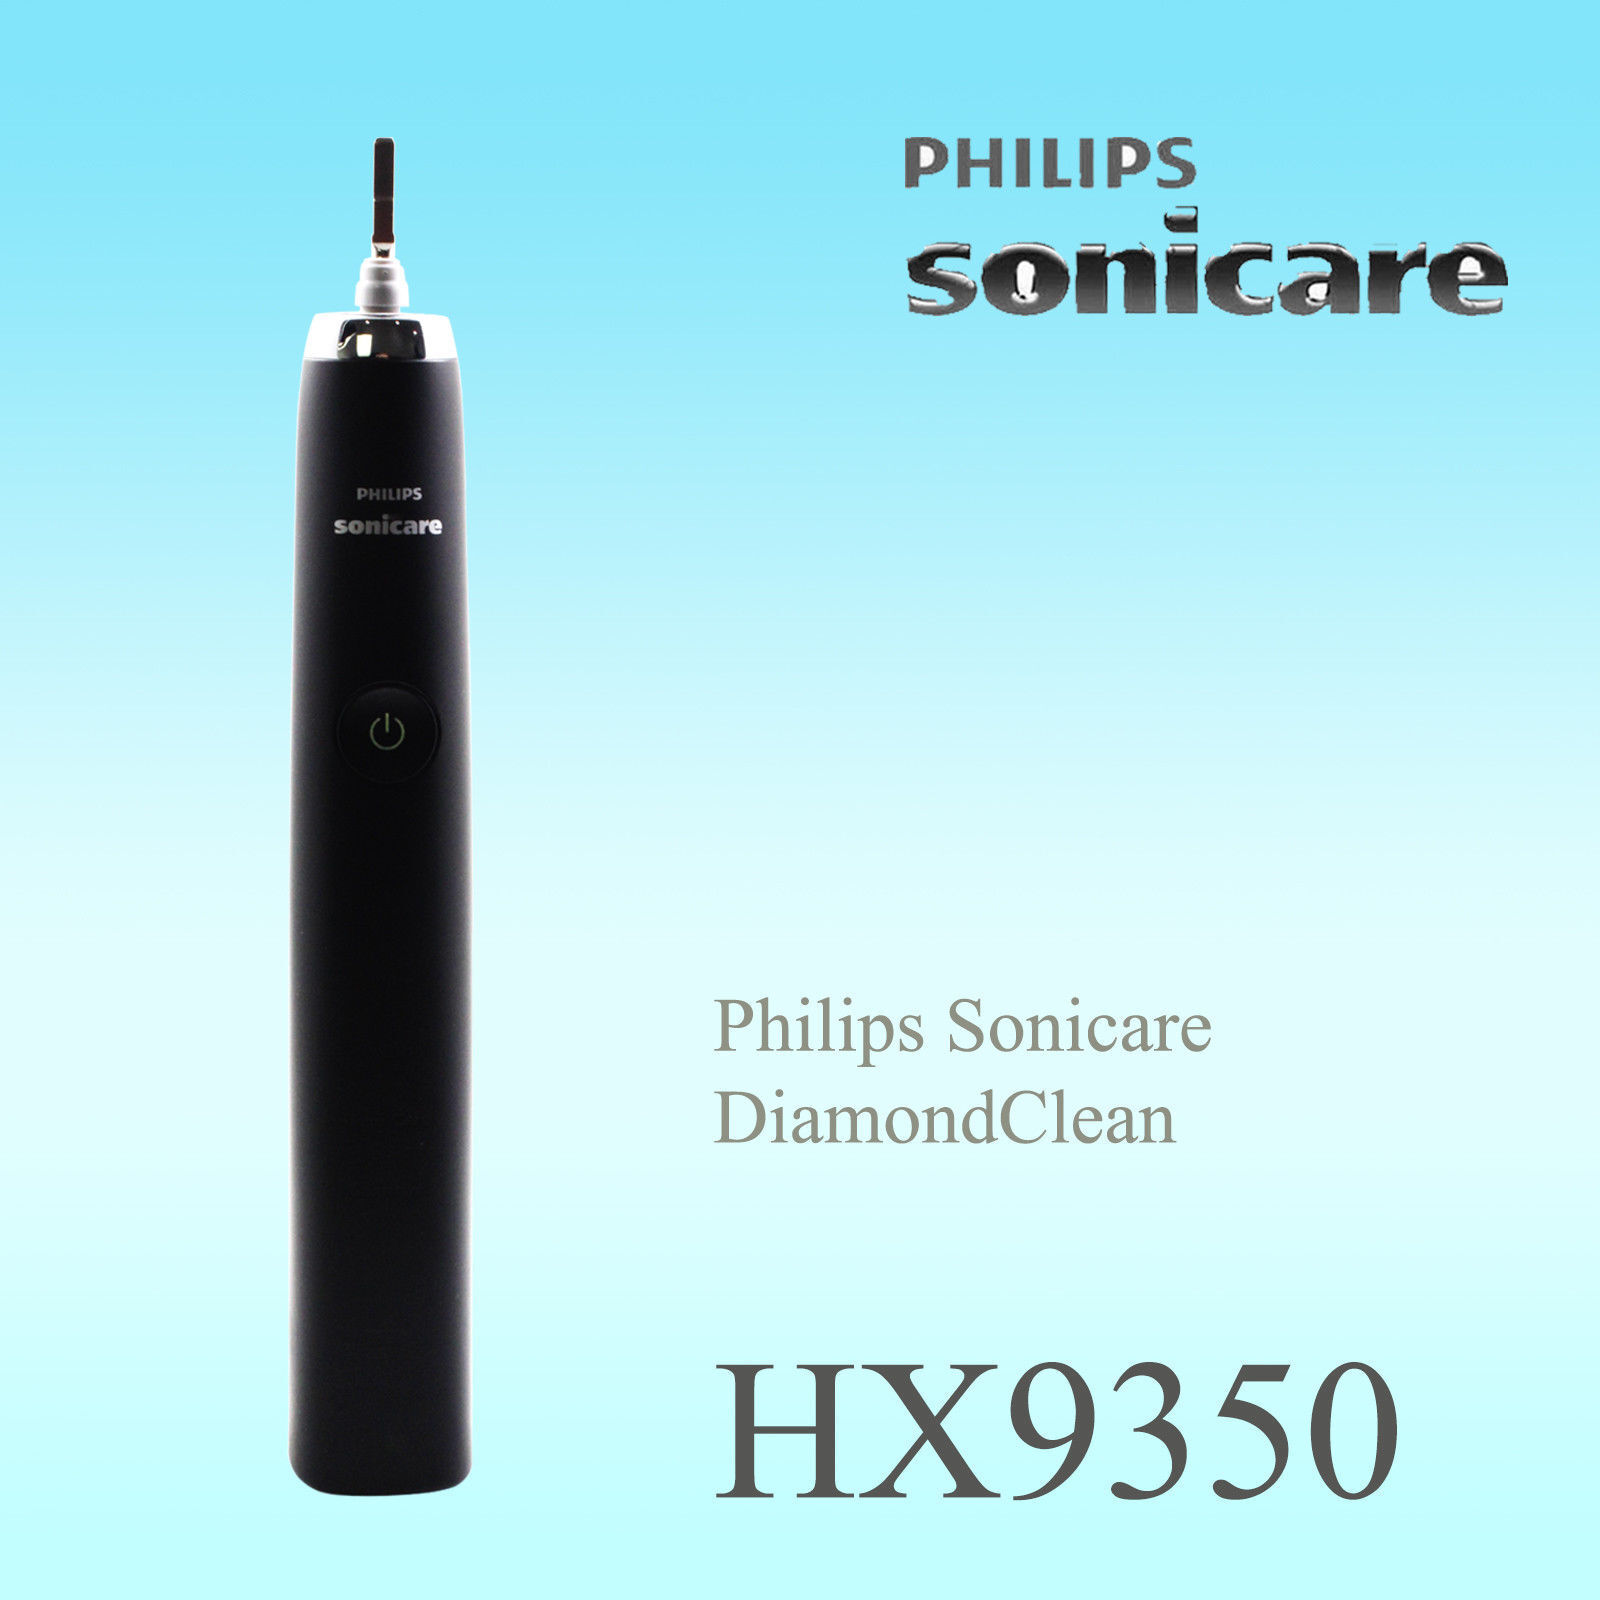 Ручка филипс. Philips lfh9350.